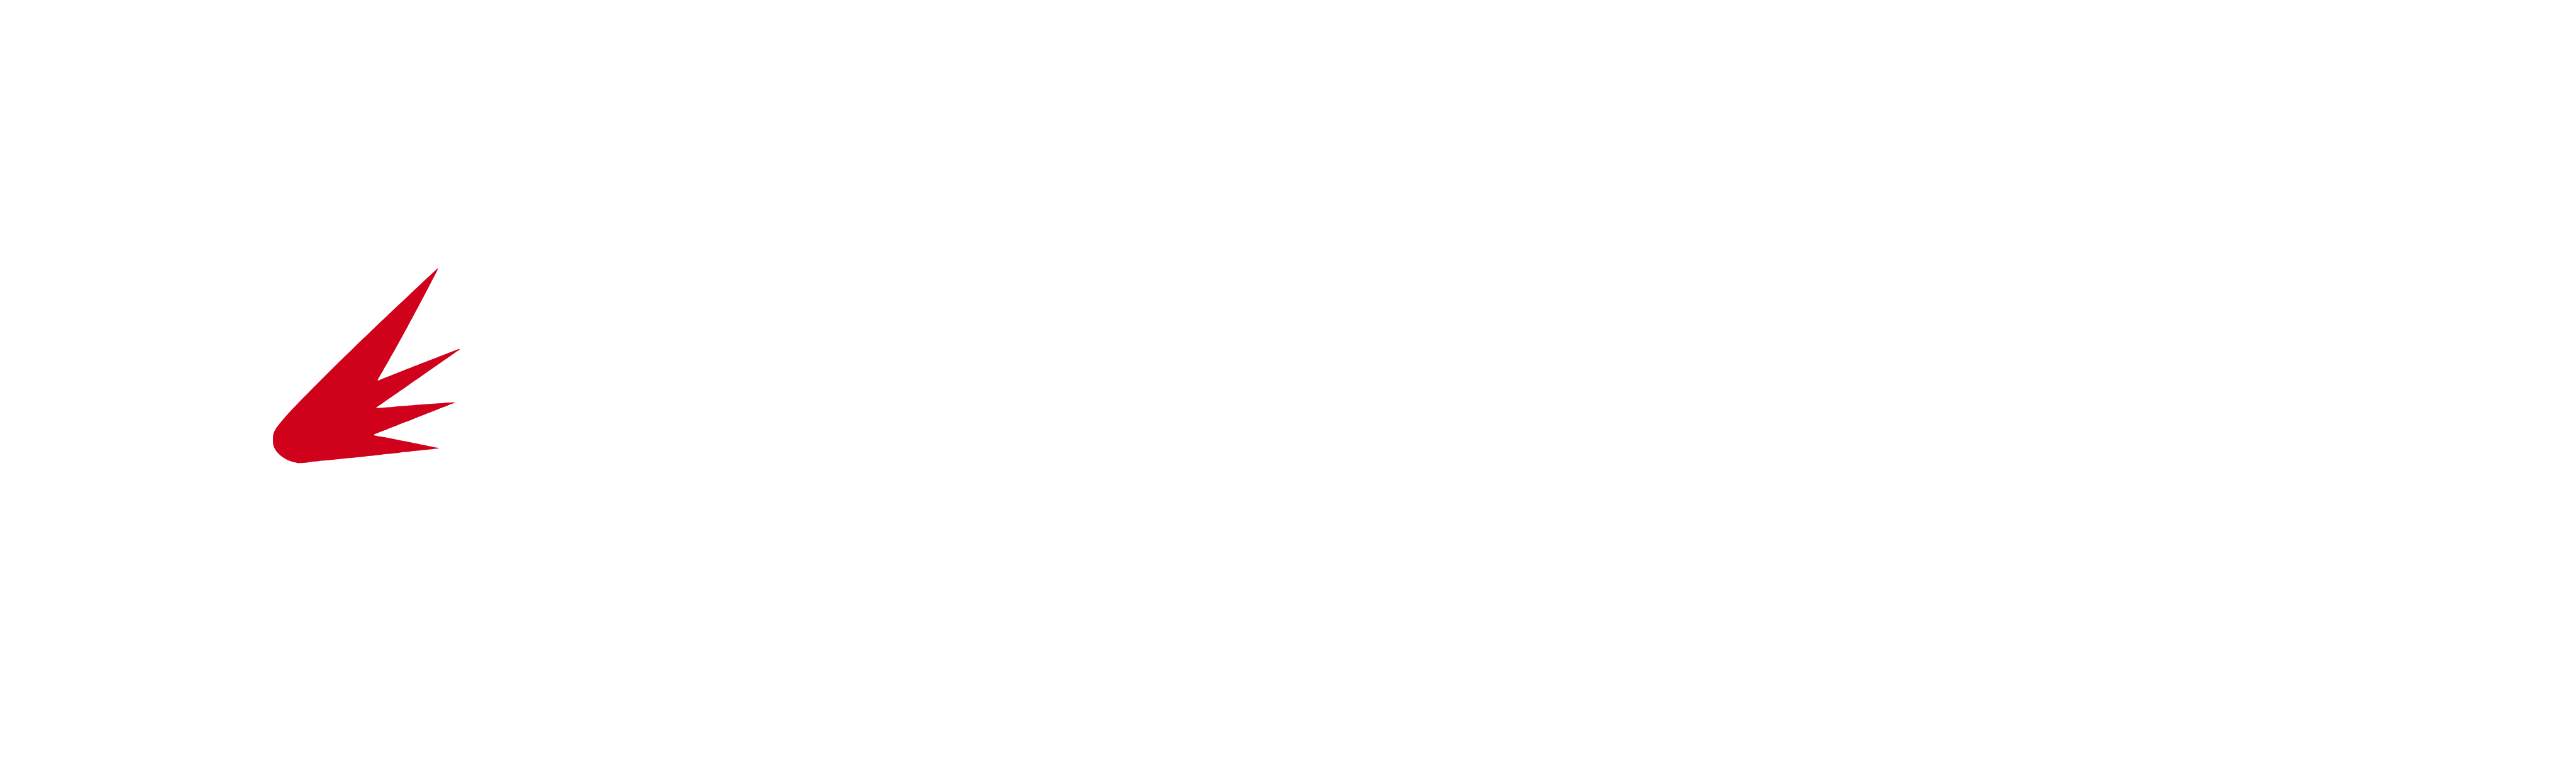 Net Core Genesis Logo